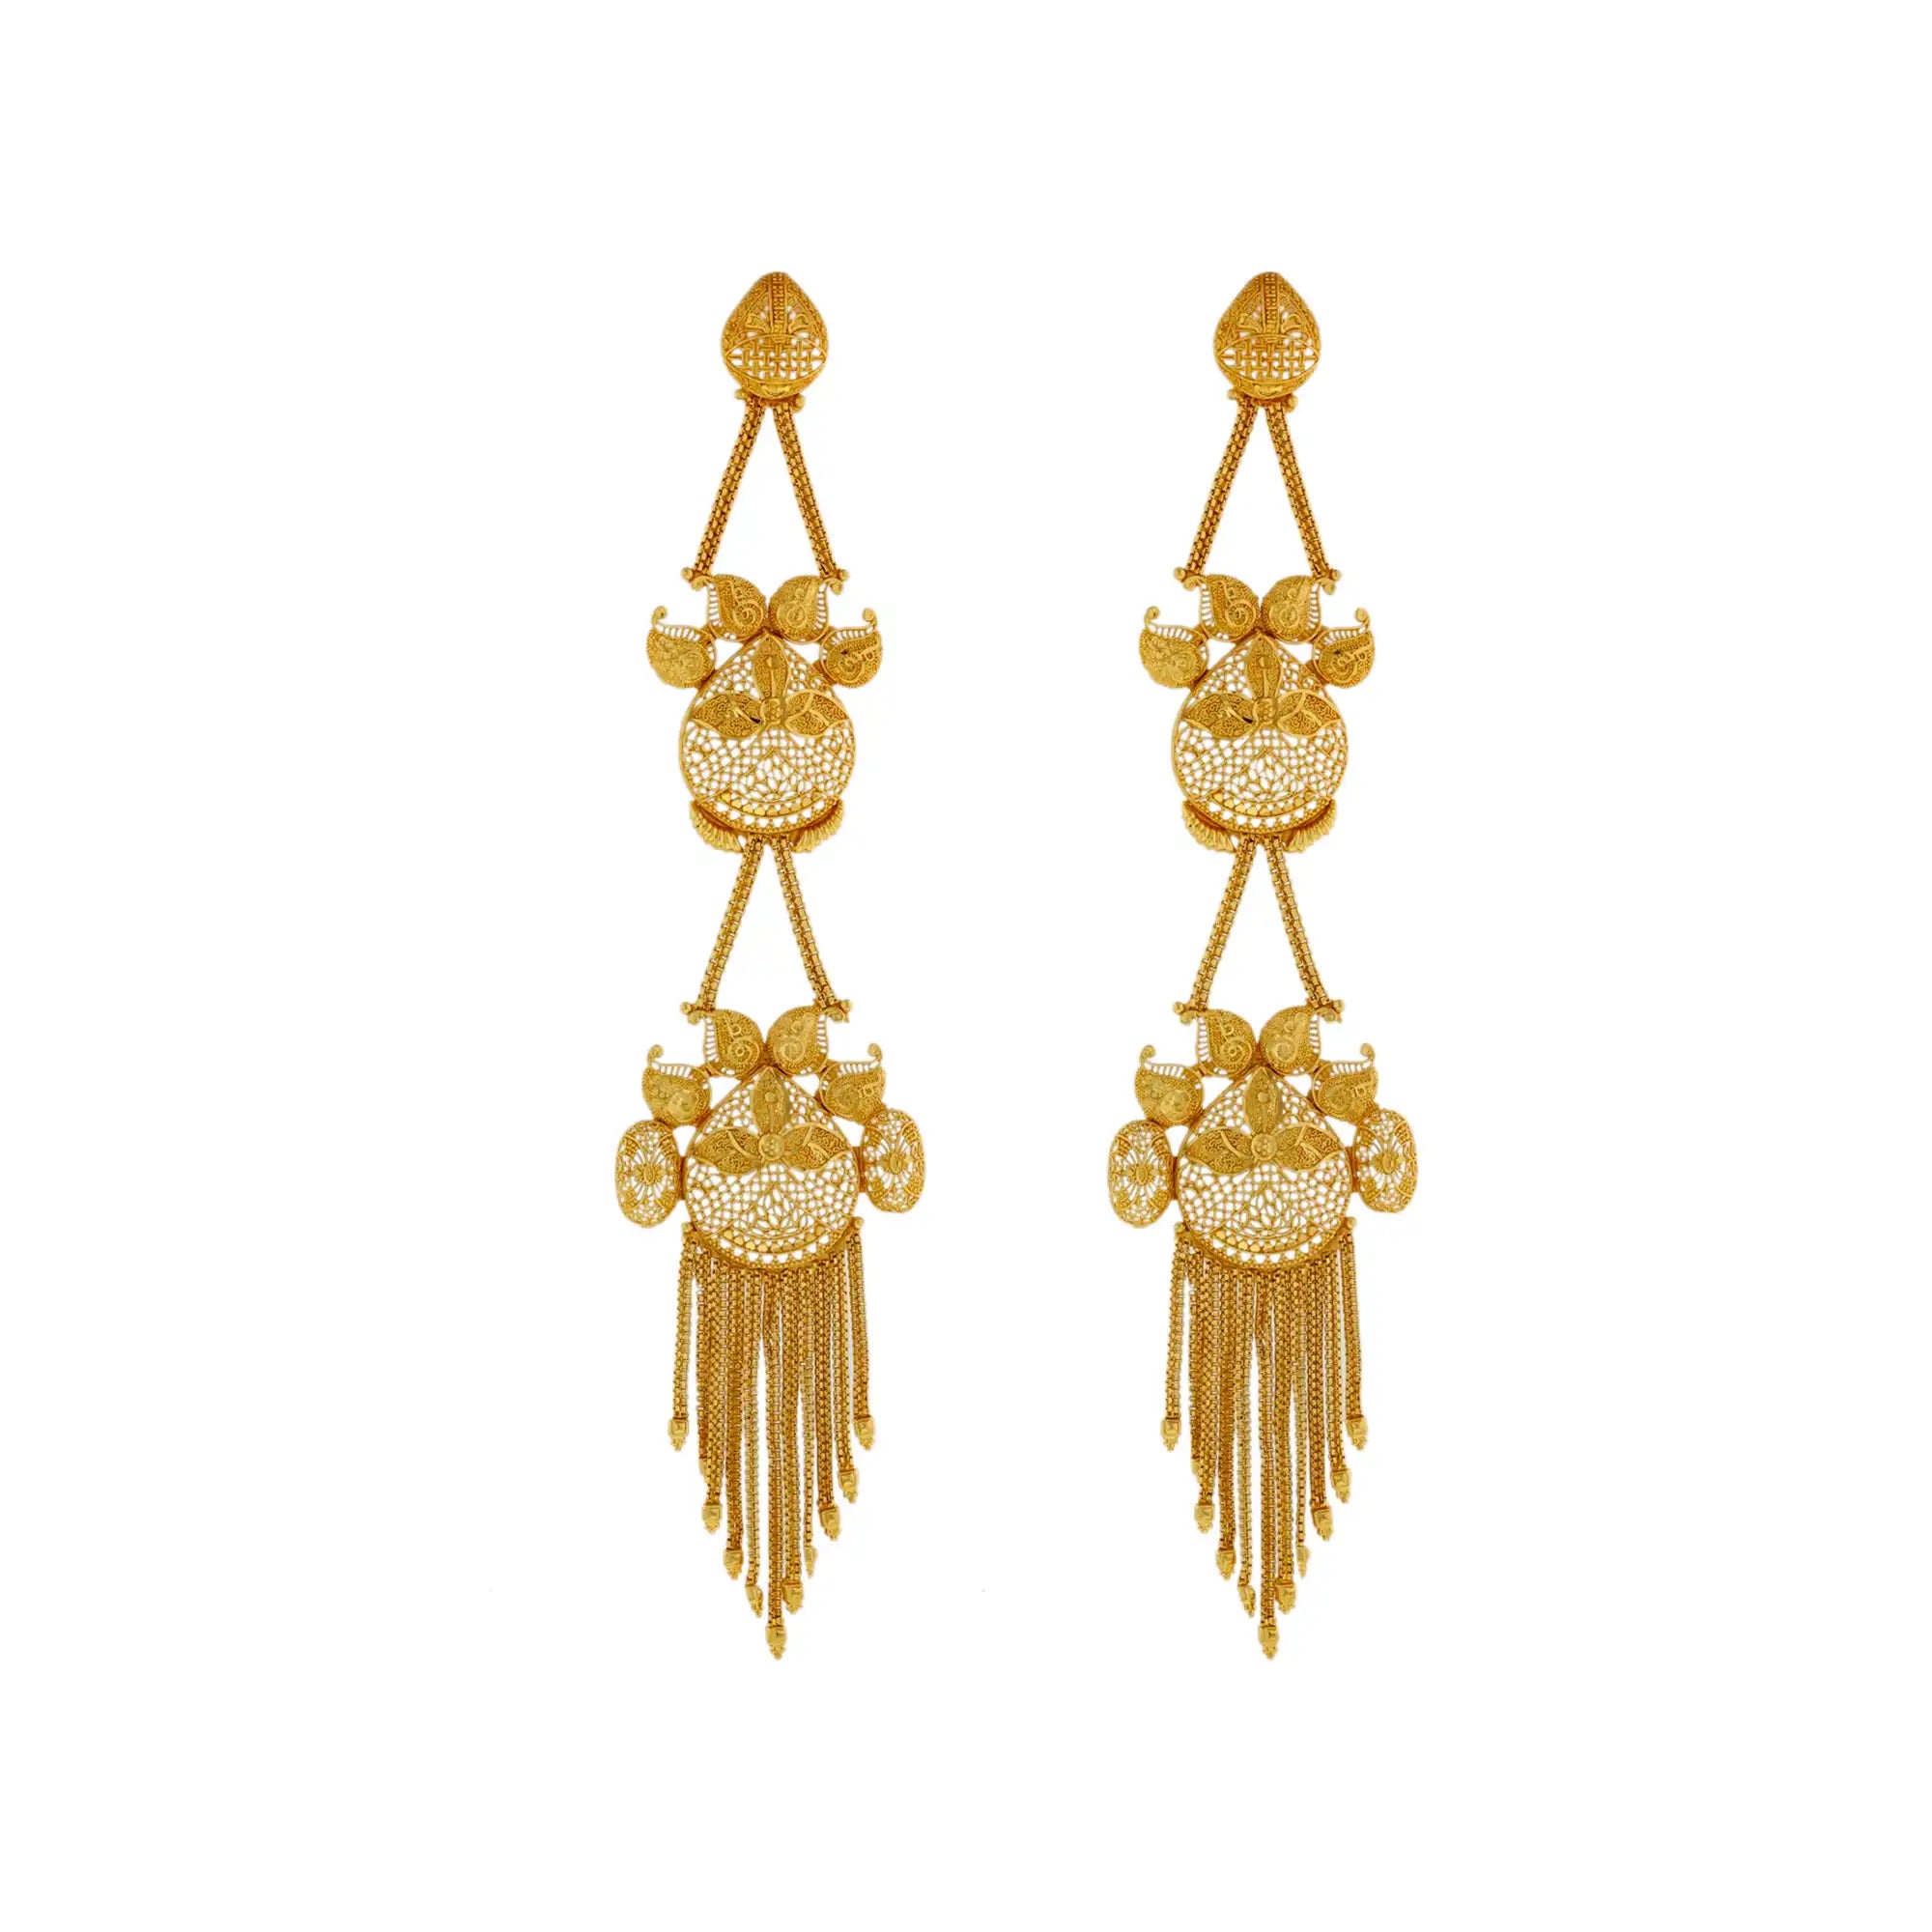 Gold-Plated Jewelry, women's statement earrings, gold-plated earrings, indian jewelry mall, Afghani earrings